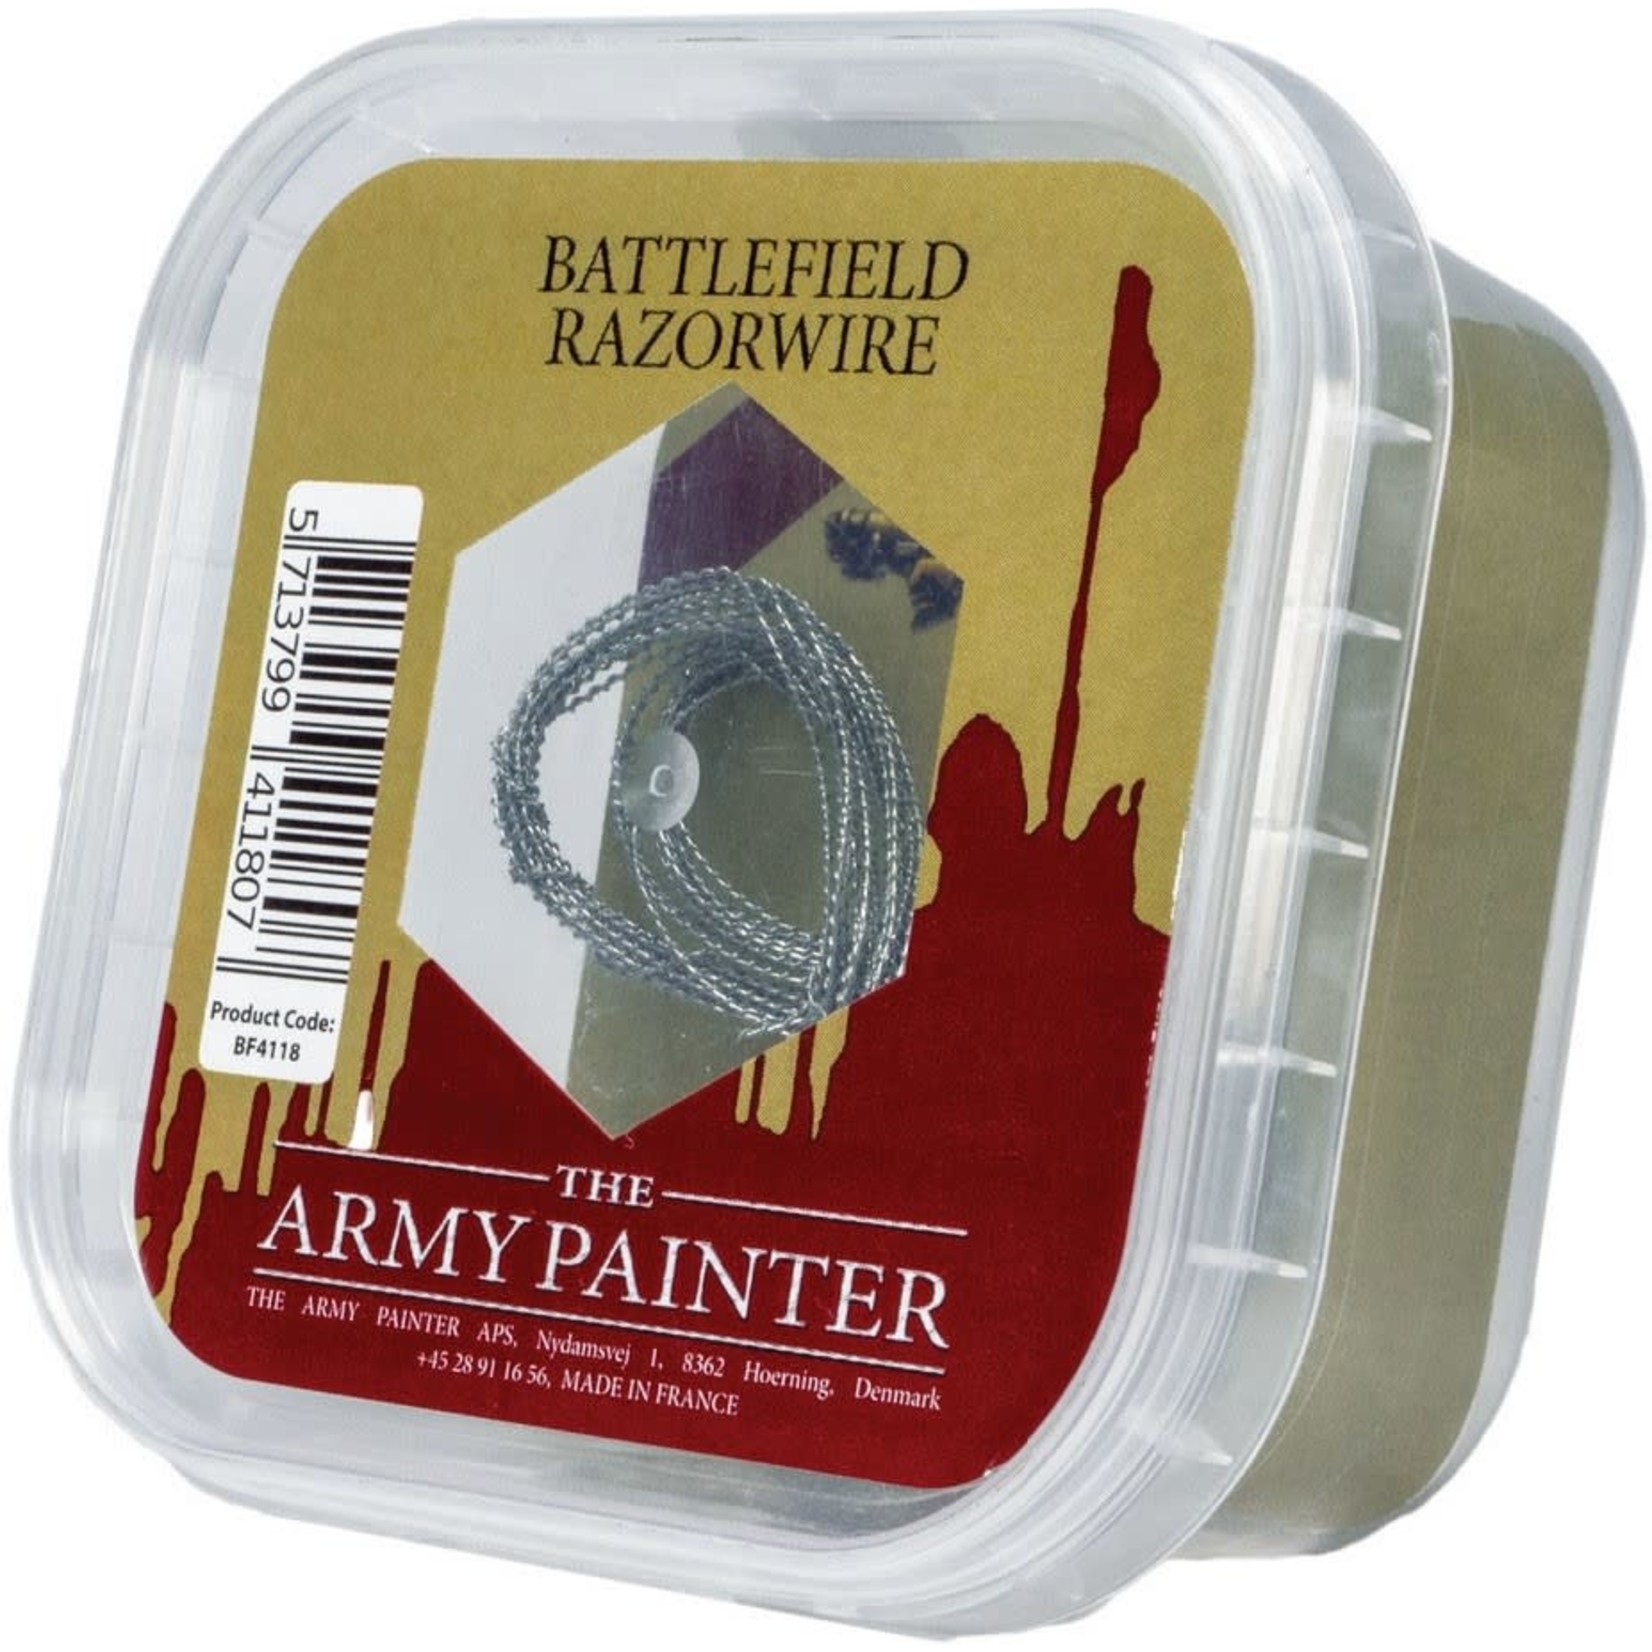 The Army Painter Razorwire